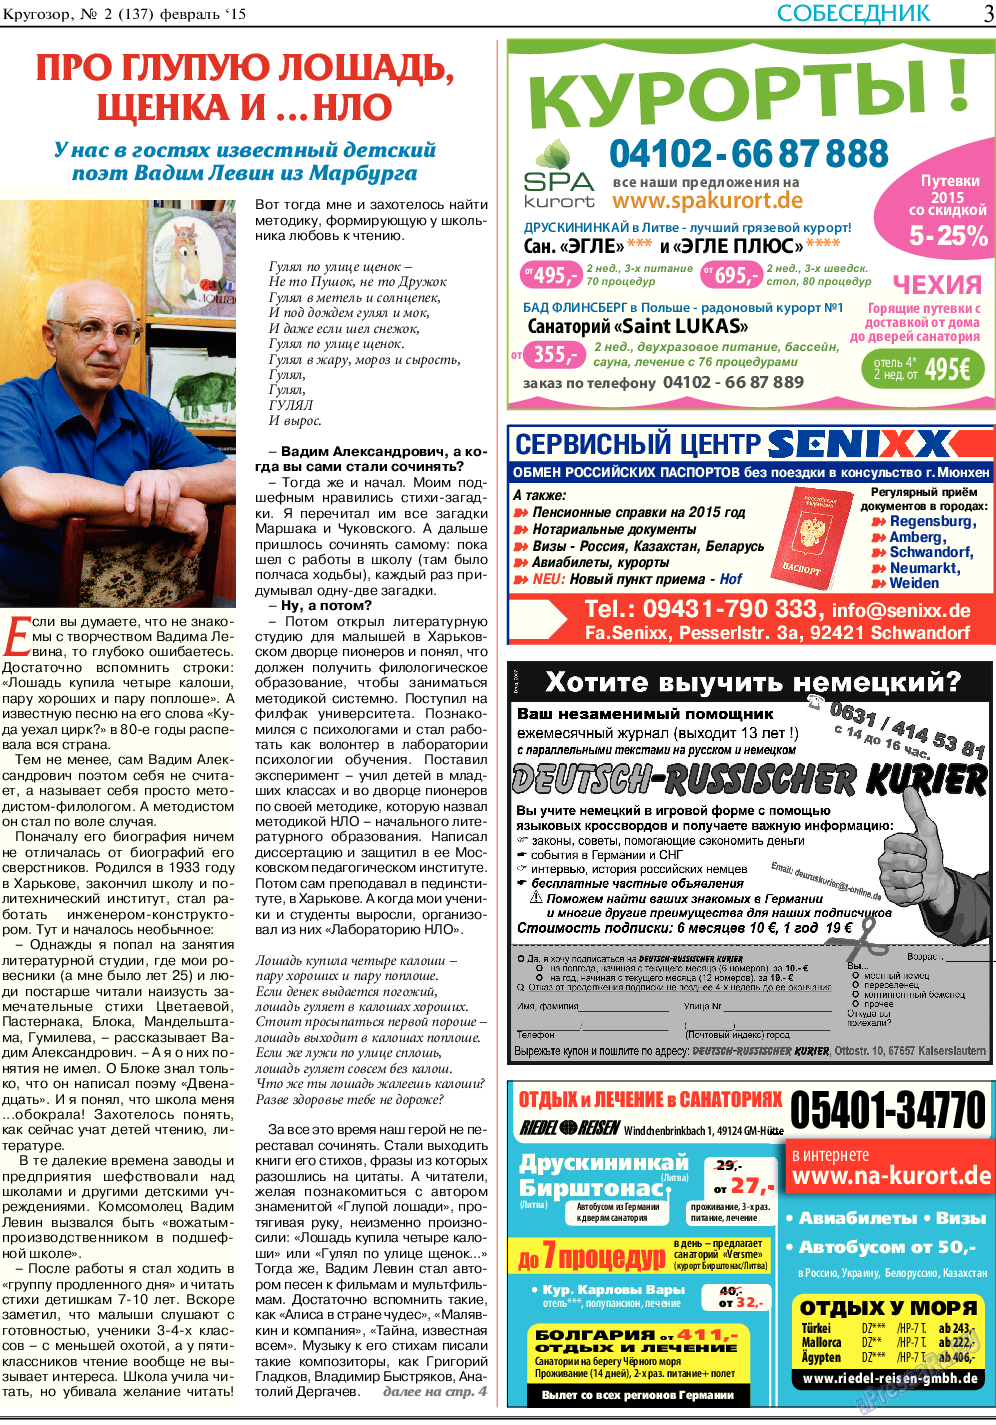 Кругозор (газета). 2015 год, номер 2, стр. 3